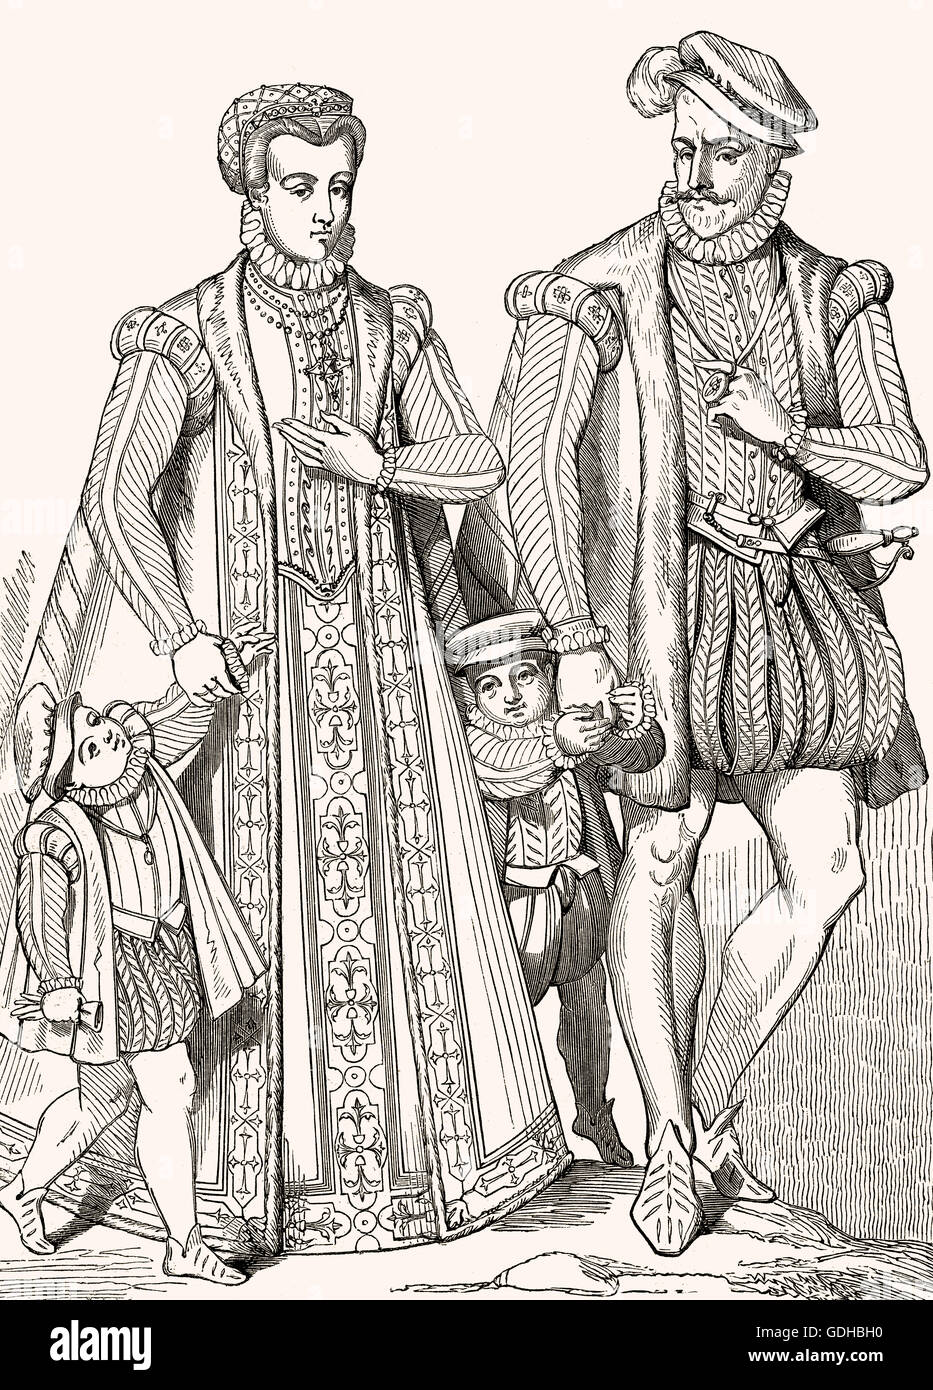 Les costumes d'une famille noble au 16ème siècle Banque D'Images